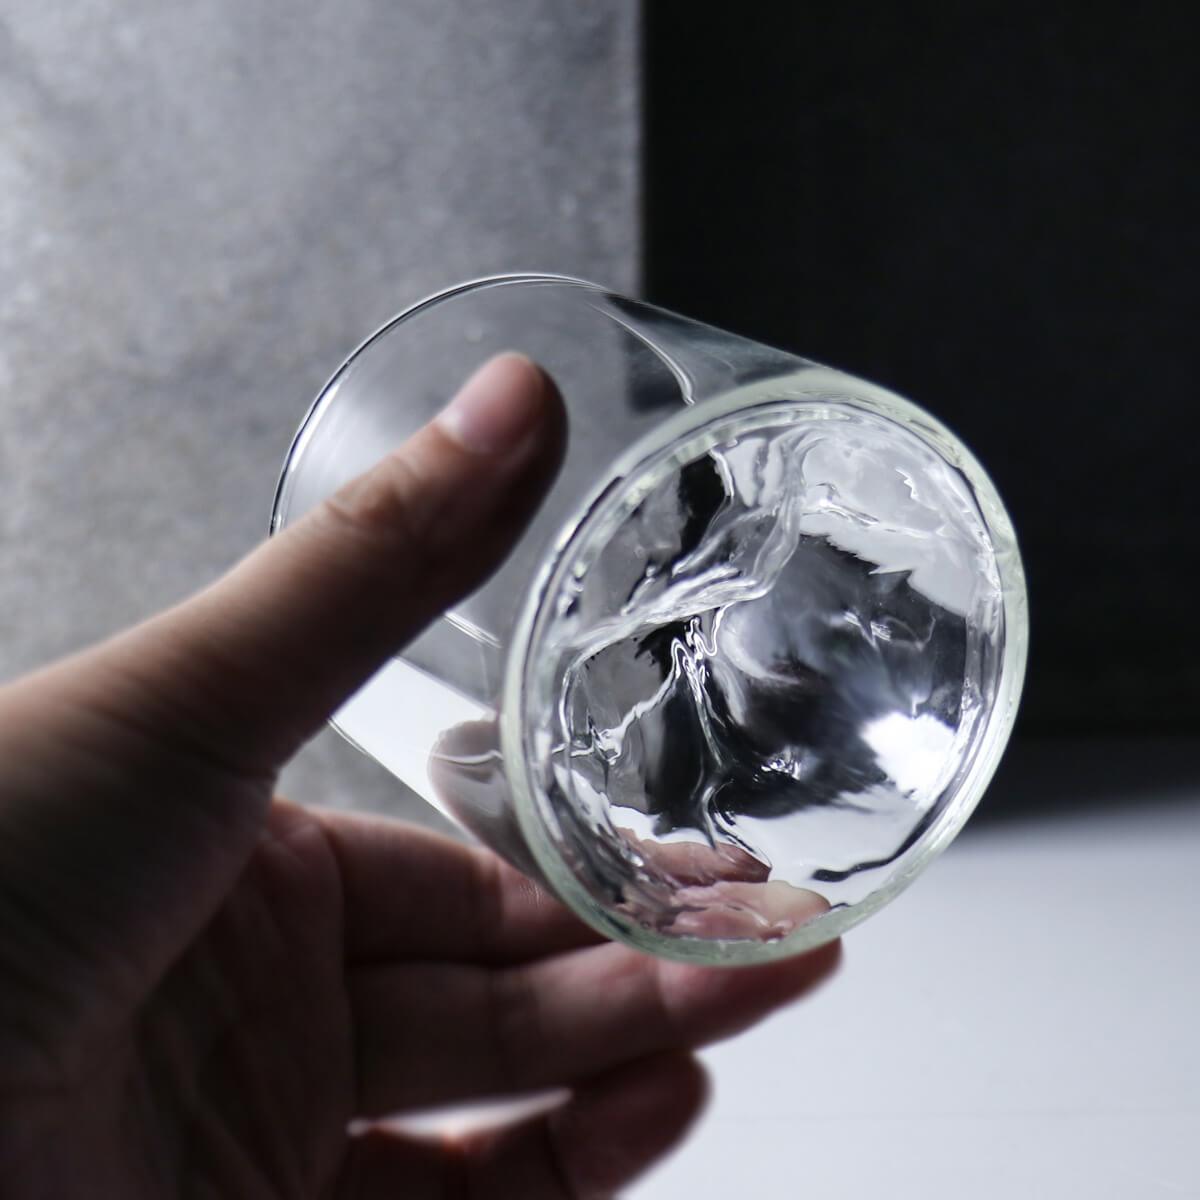 200cc【雪山耐熱杯】書法字刻字紀念茶杯 - MSA玻璃雕刻